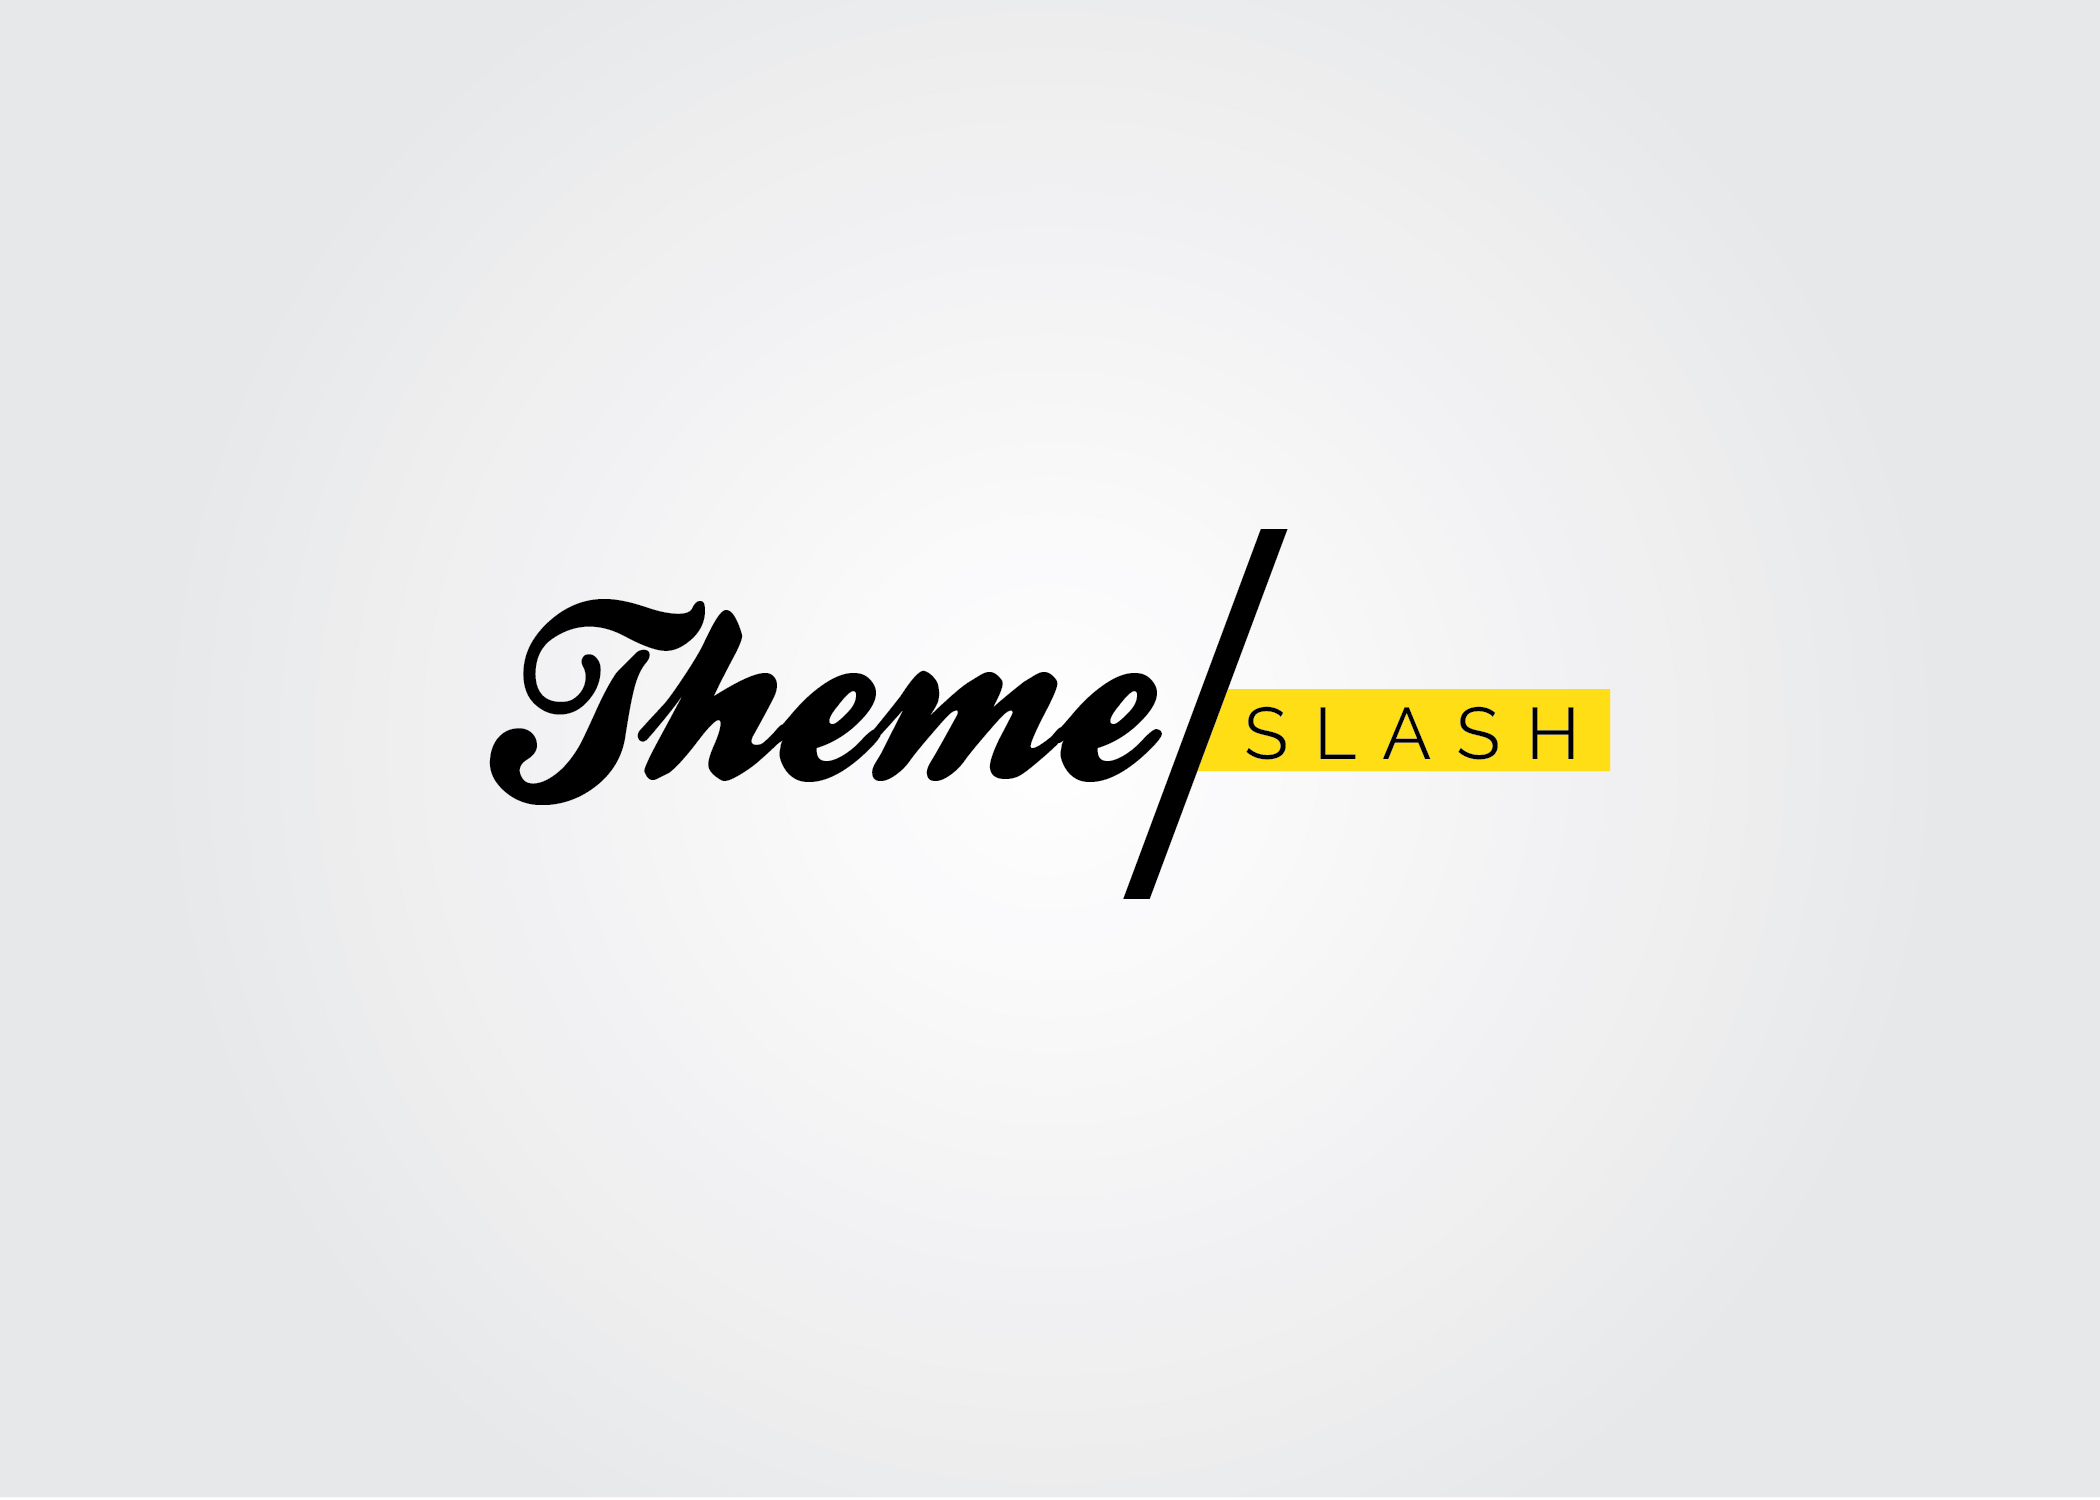 Theme Slash